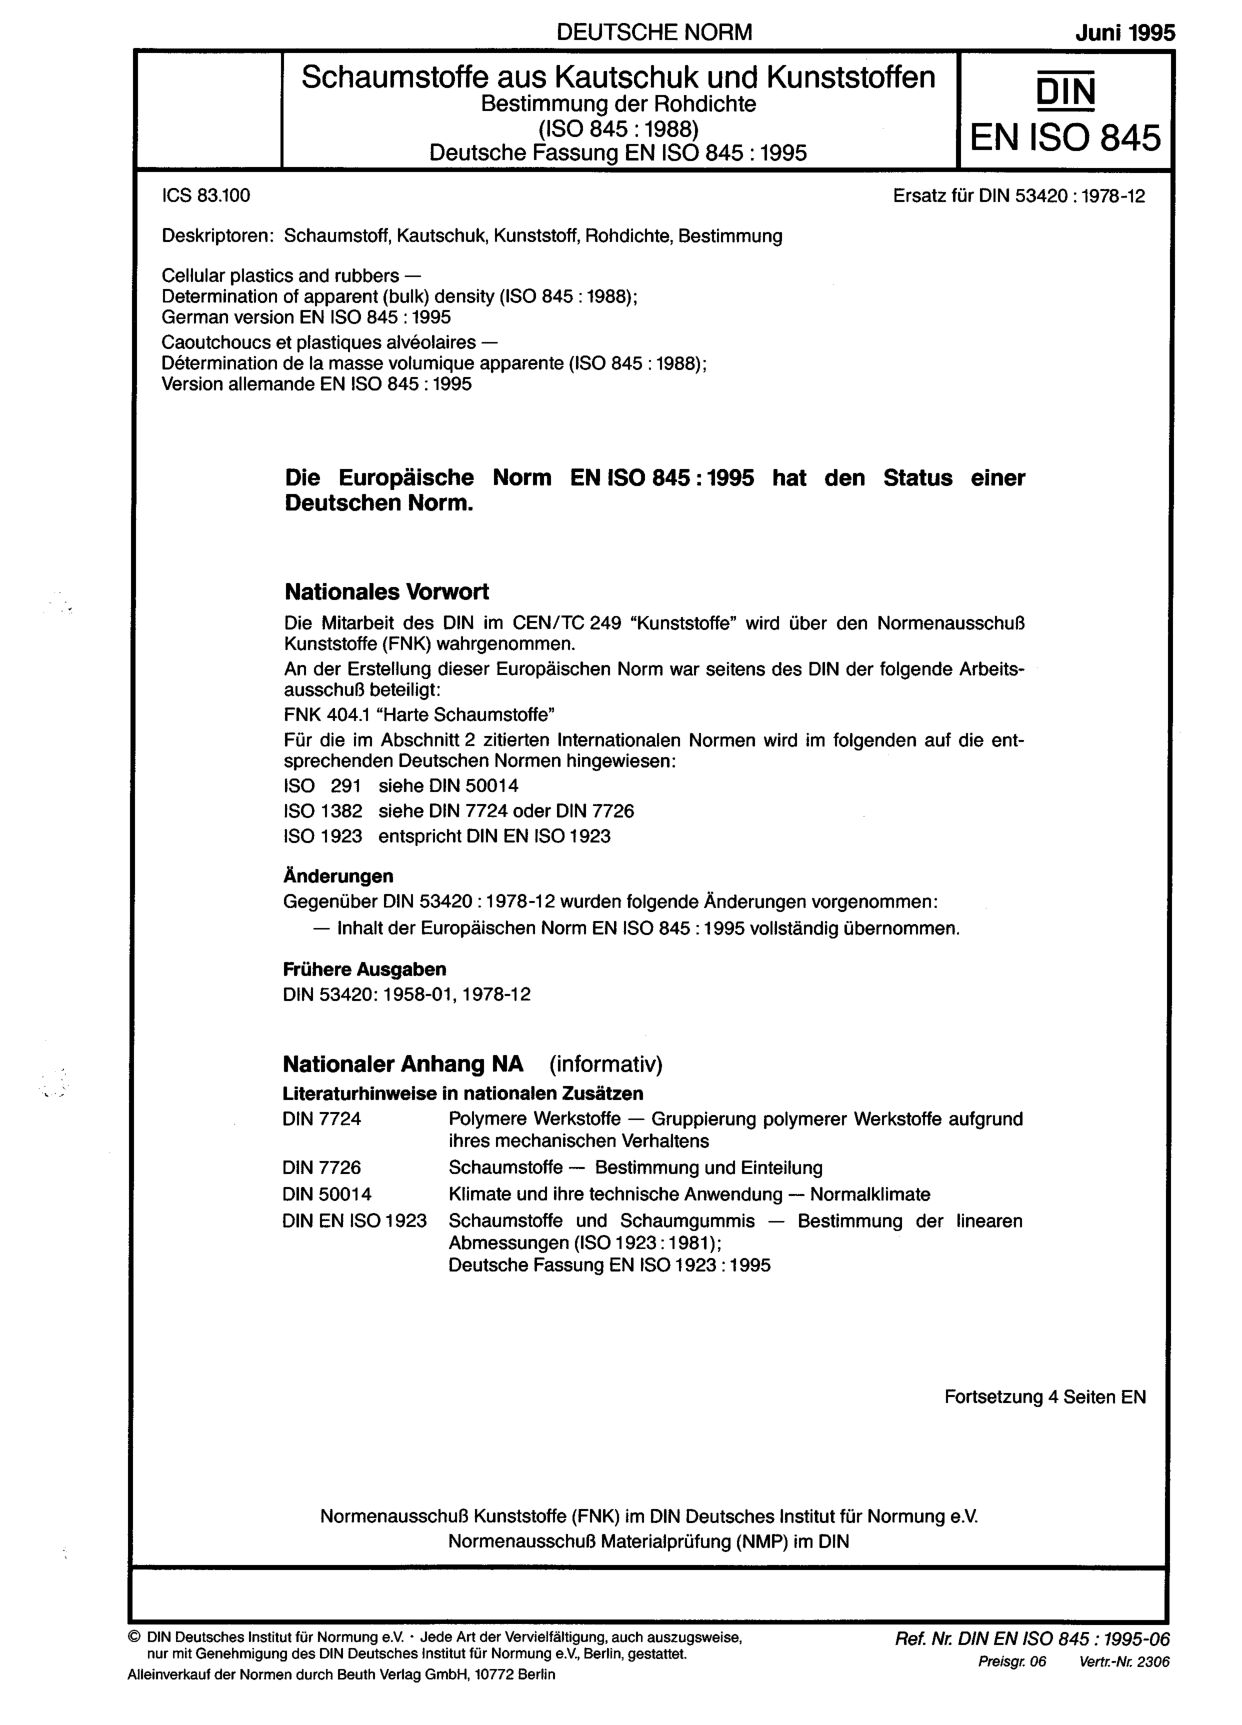 DIN EN ISO 845:1995封面图